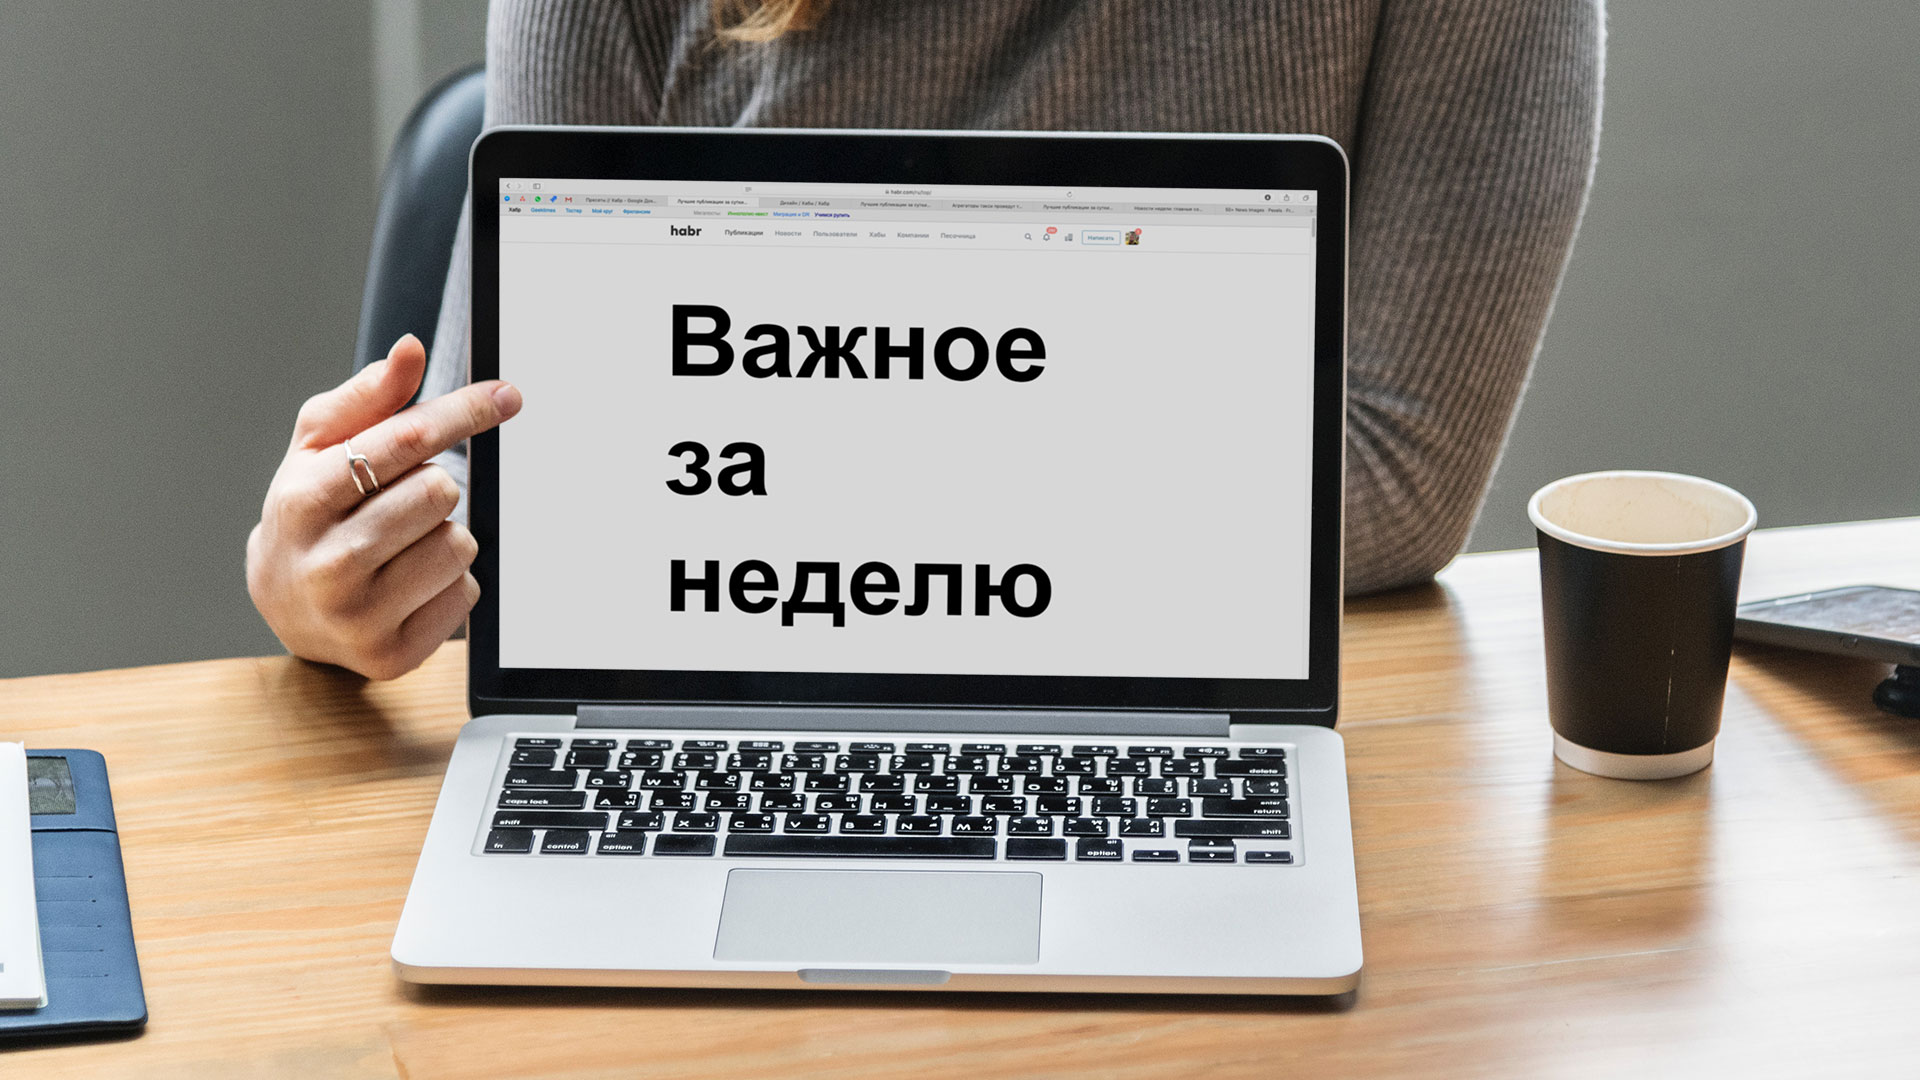 Новости недели: Центр управления автономным Рунетом, биткоин на отметке $8000, уязвимость в процессорах Intel - 1